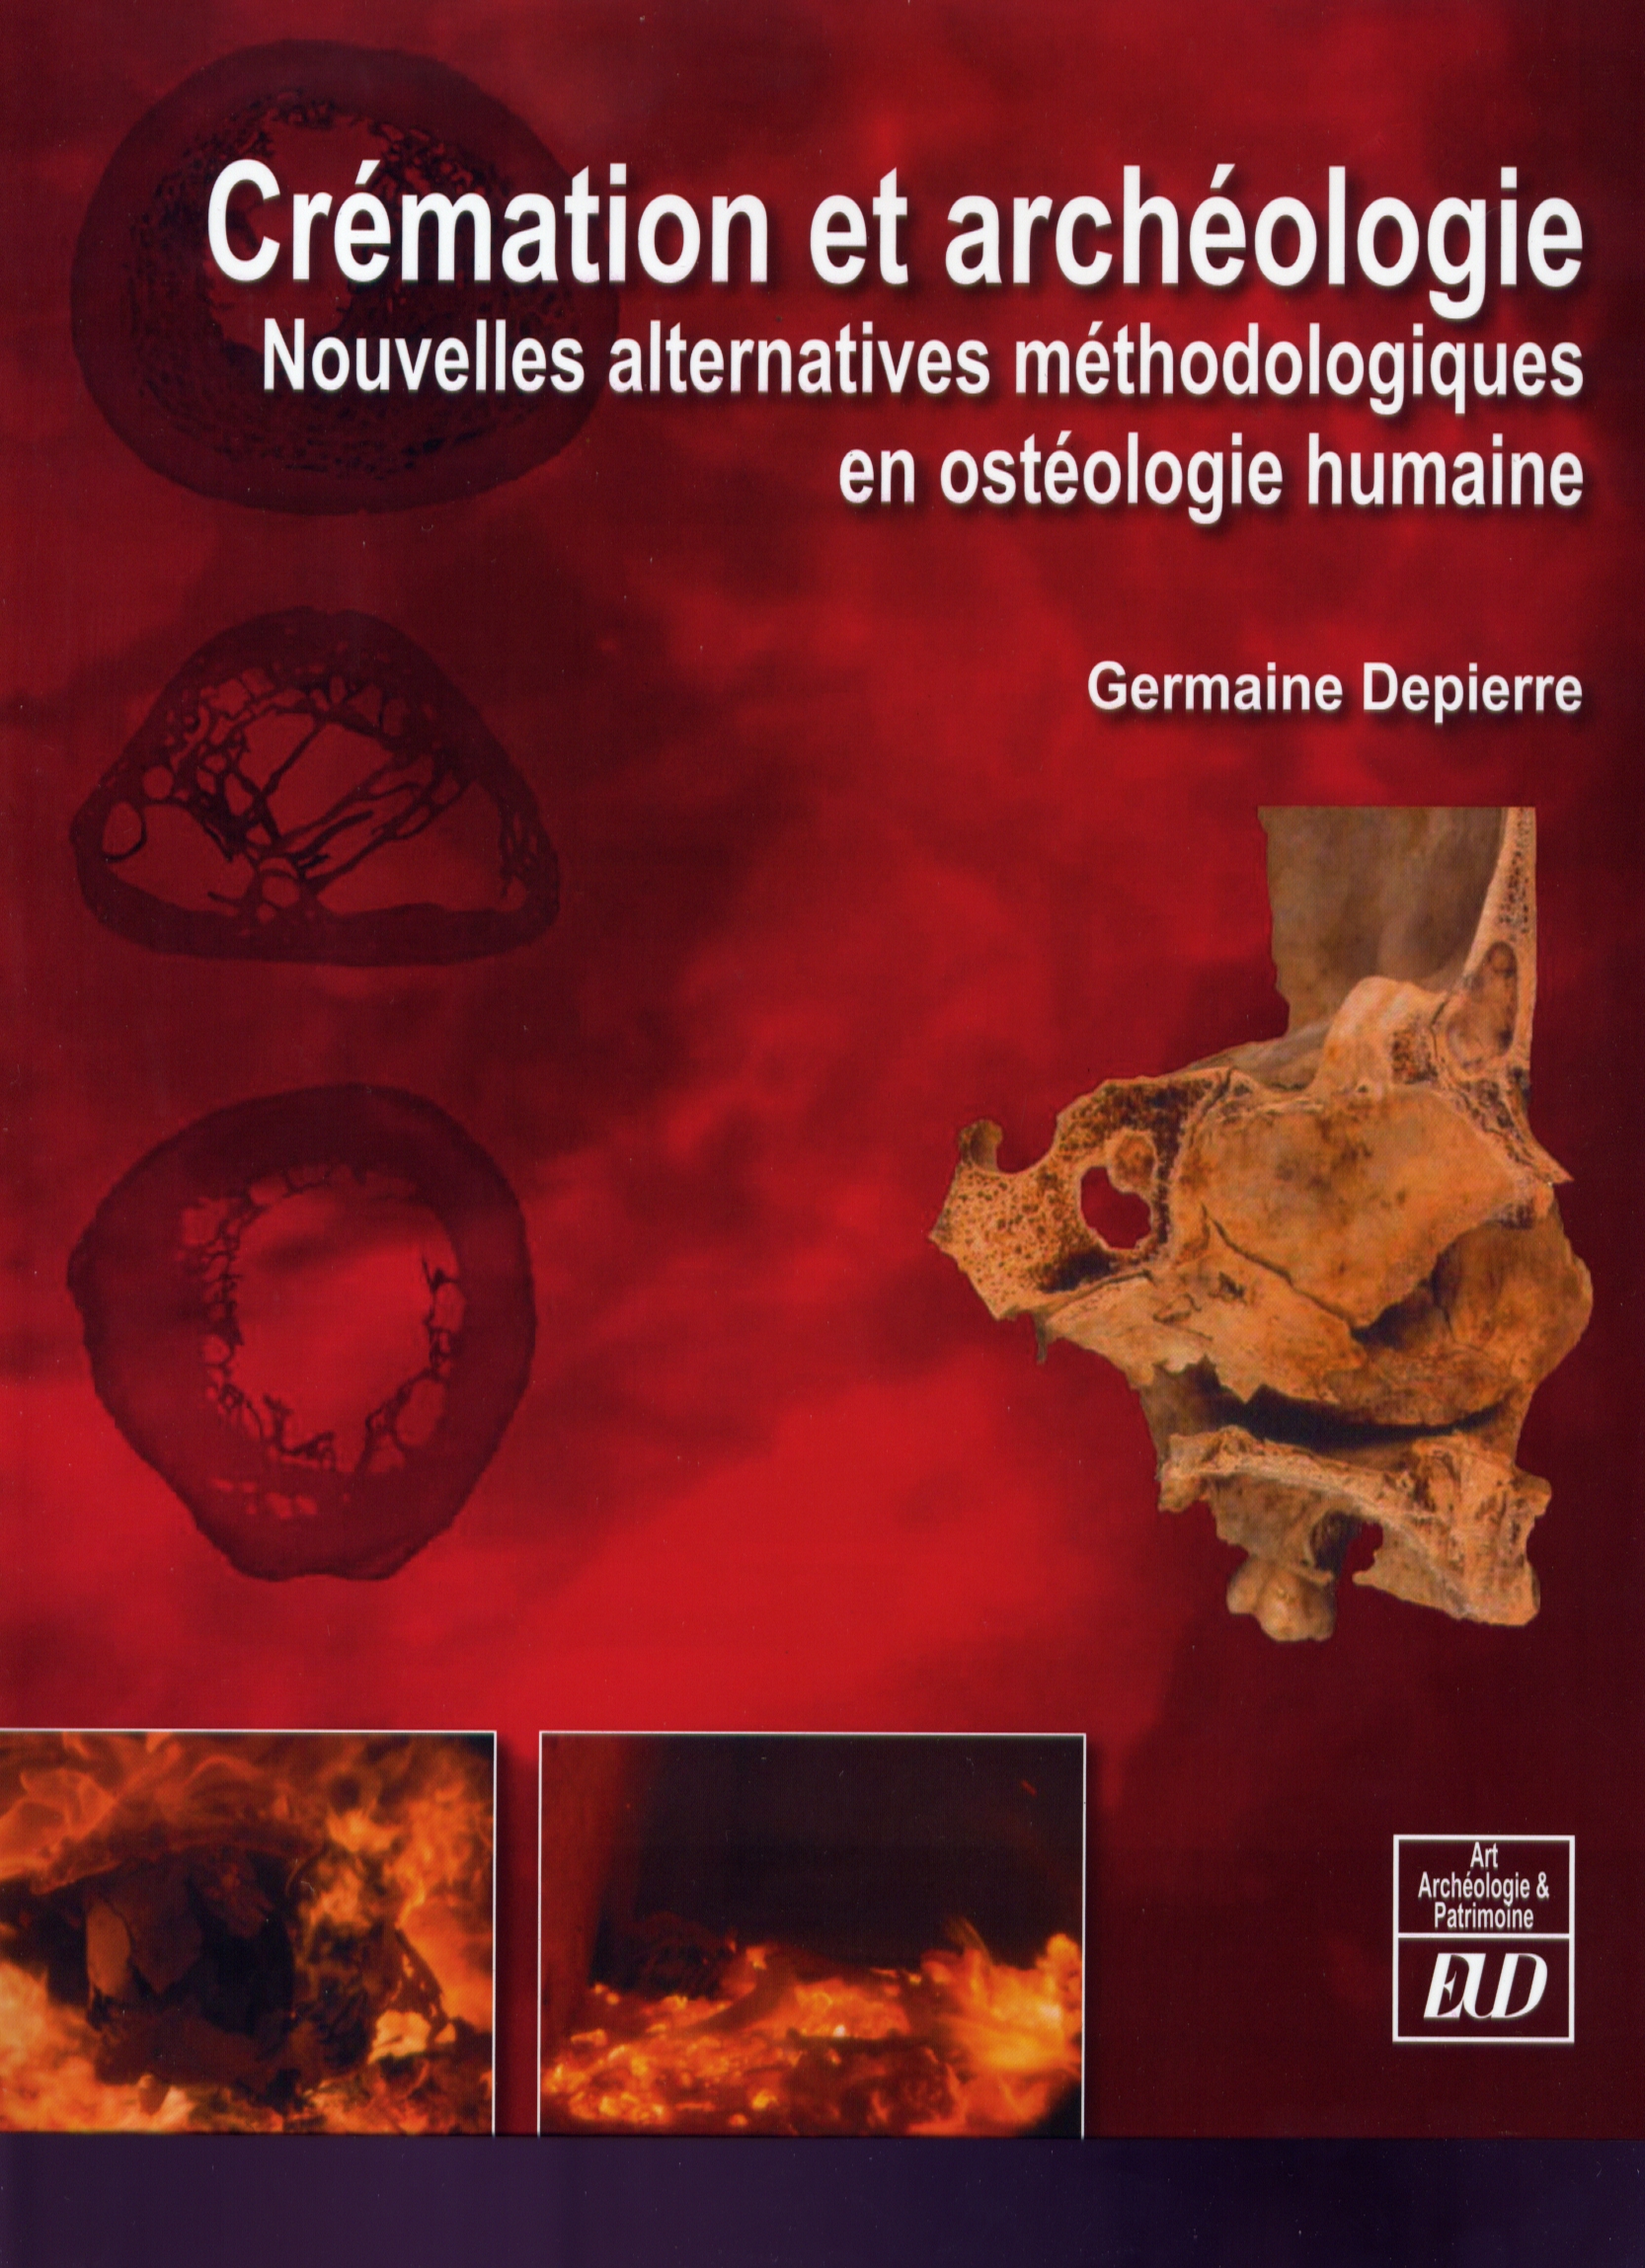 Crémation et archéologie. Nouvelles alternatives méthodologiques en ostéologie humaine, 2014, 654 p.